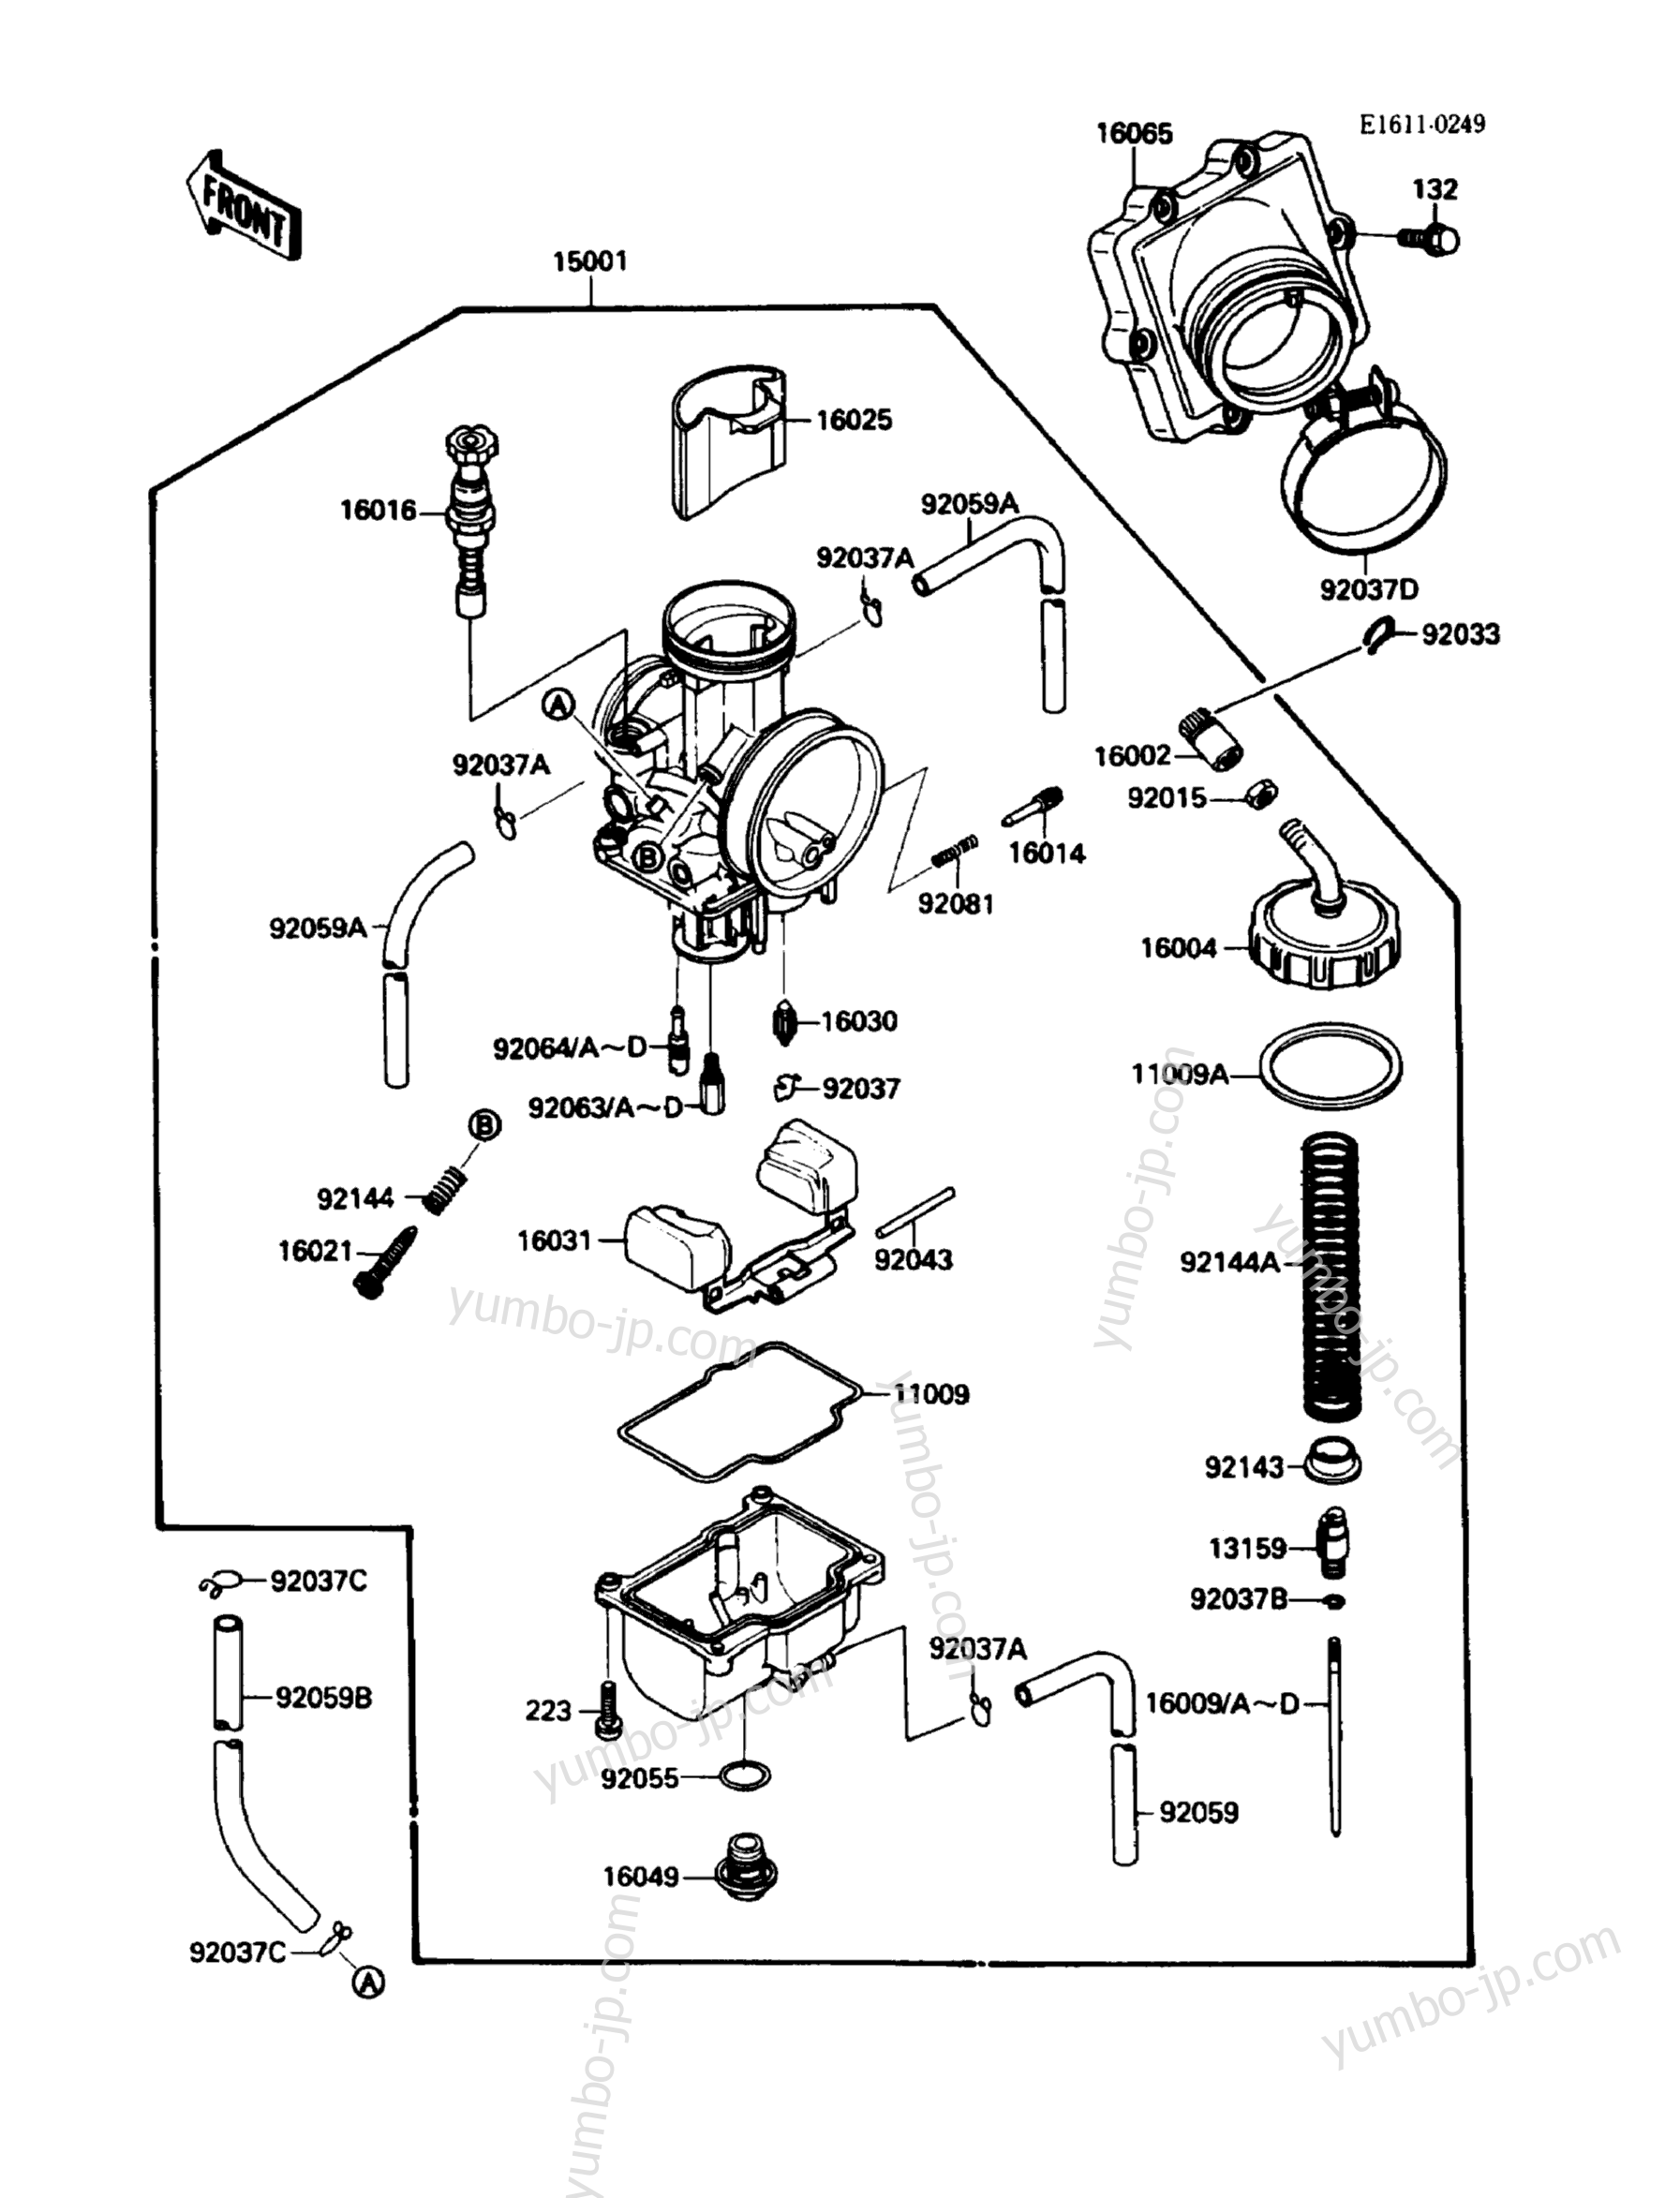 Carburetor(KXF250-A2)(004205å) for ATVs KAWASAKI KXF250 TECATE-4 (KXF250-A2) 1988 year